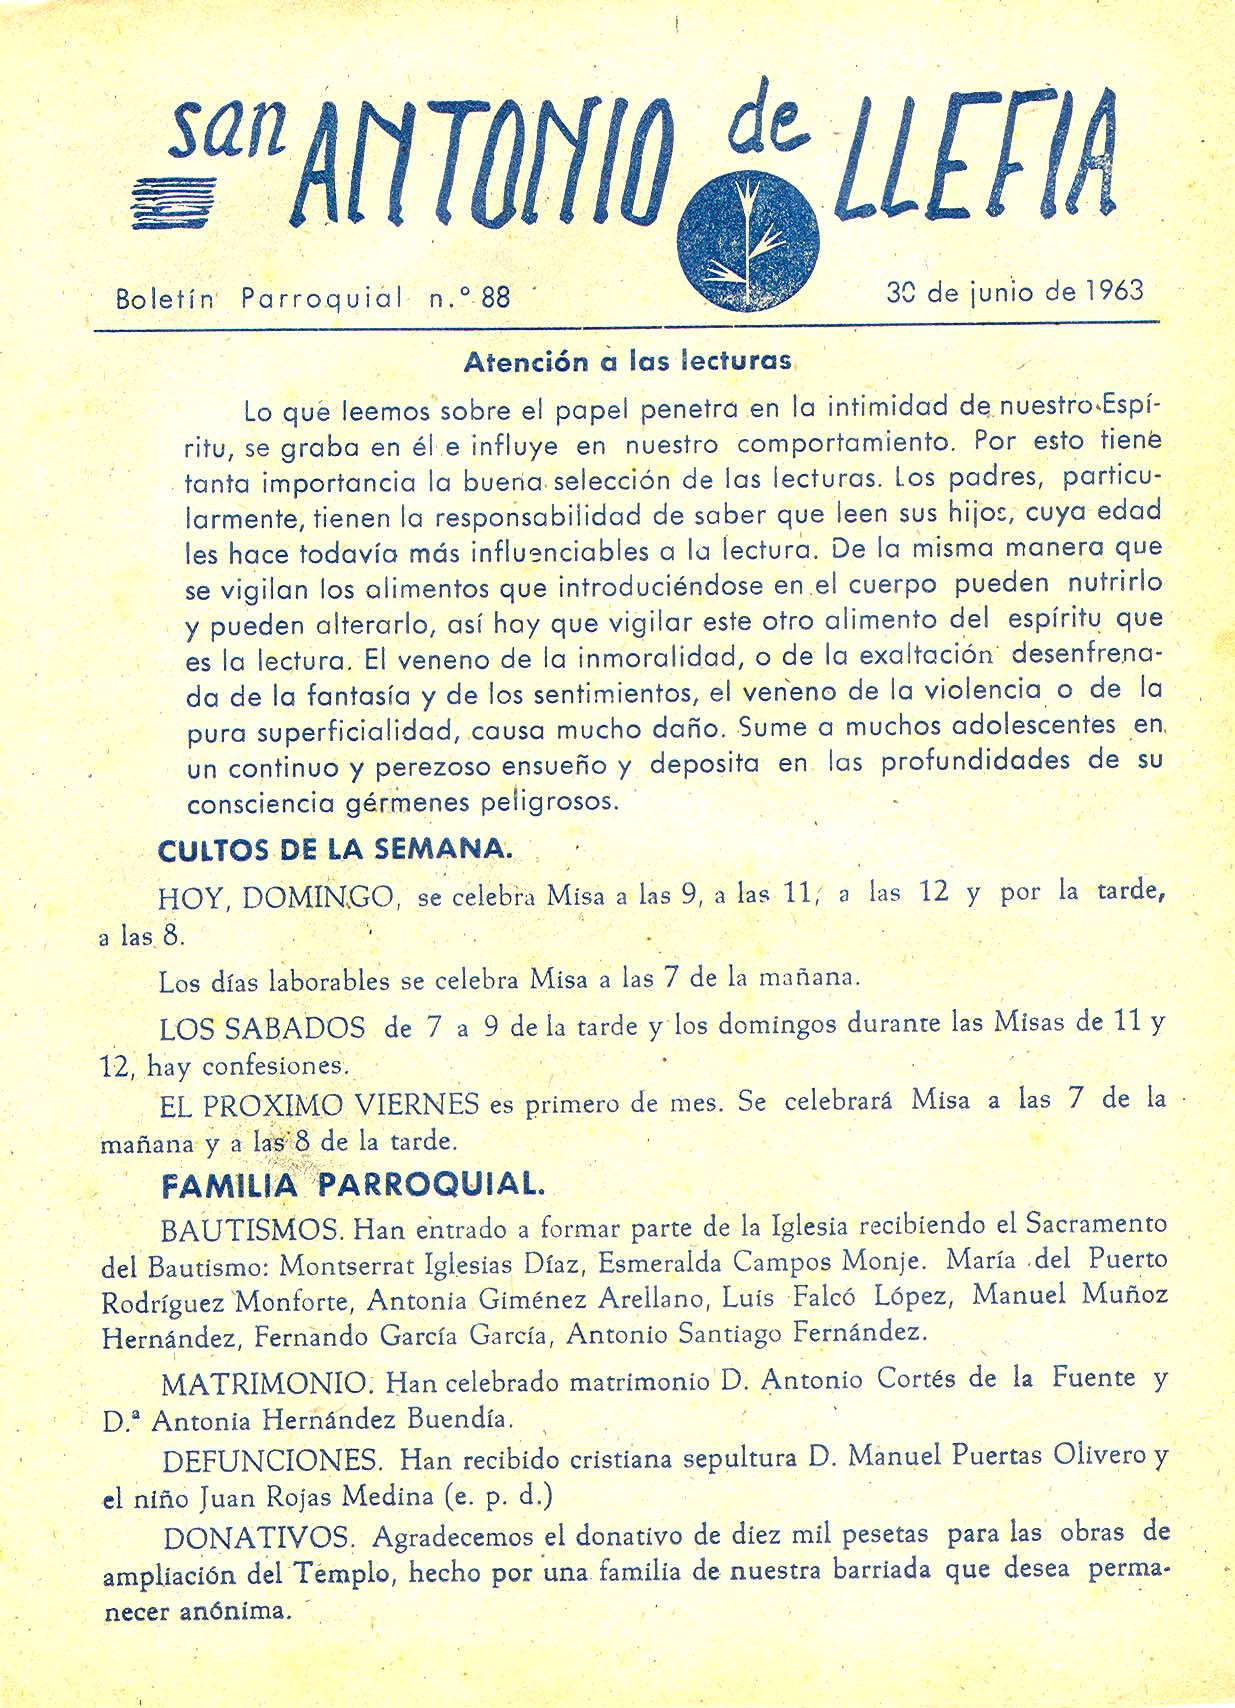 1963 Boletin parroquial nÃºm 88